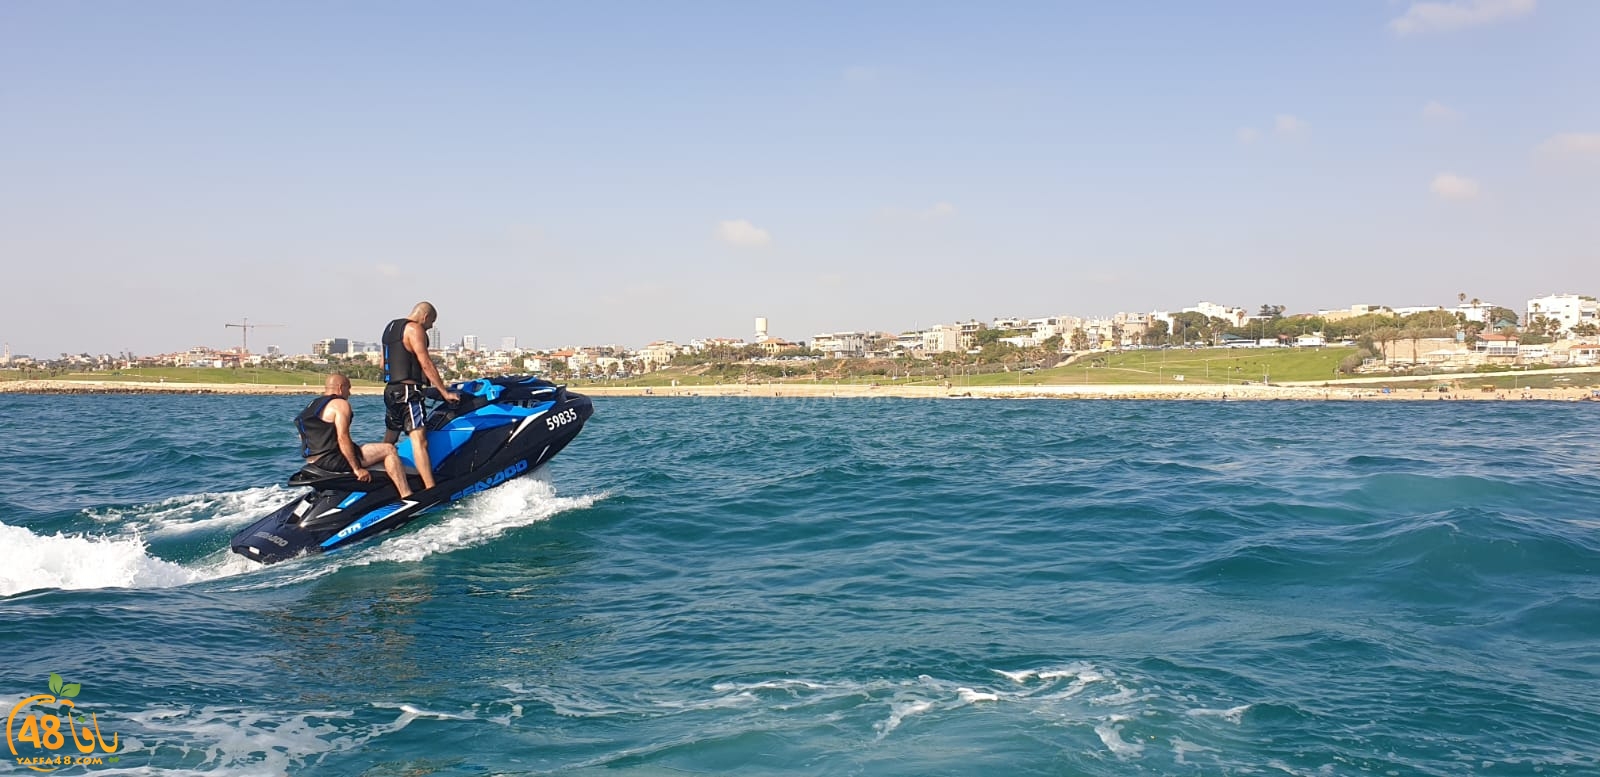  فيديو: رياضة الجيت سكي المائية تحظى باهتمام واسع لدى شباب مدينة يافا